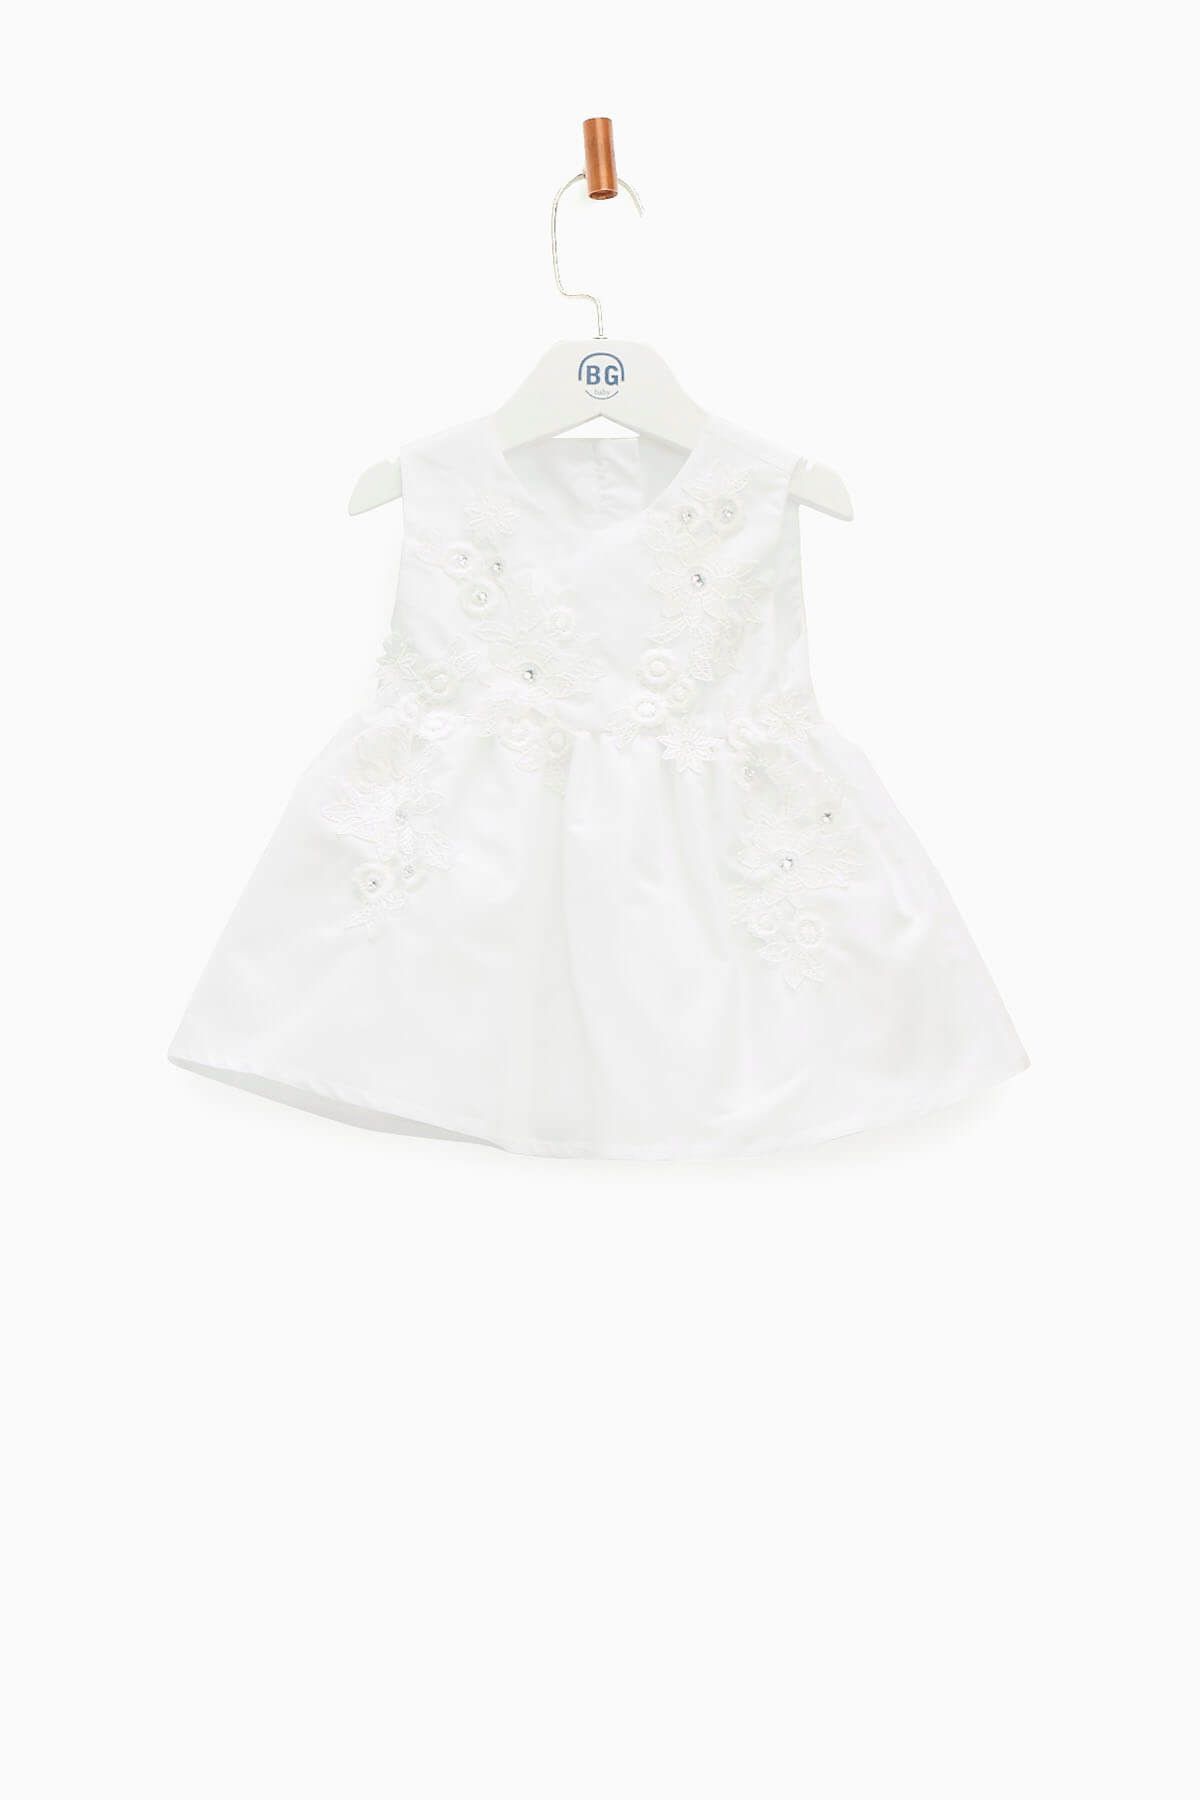 BG Baby Beyaz Kız Bebek Elbise